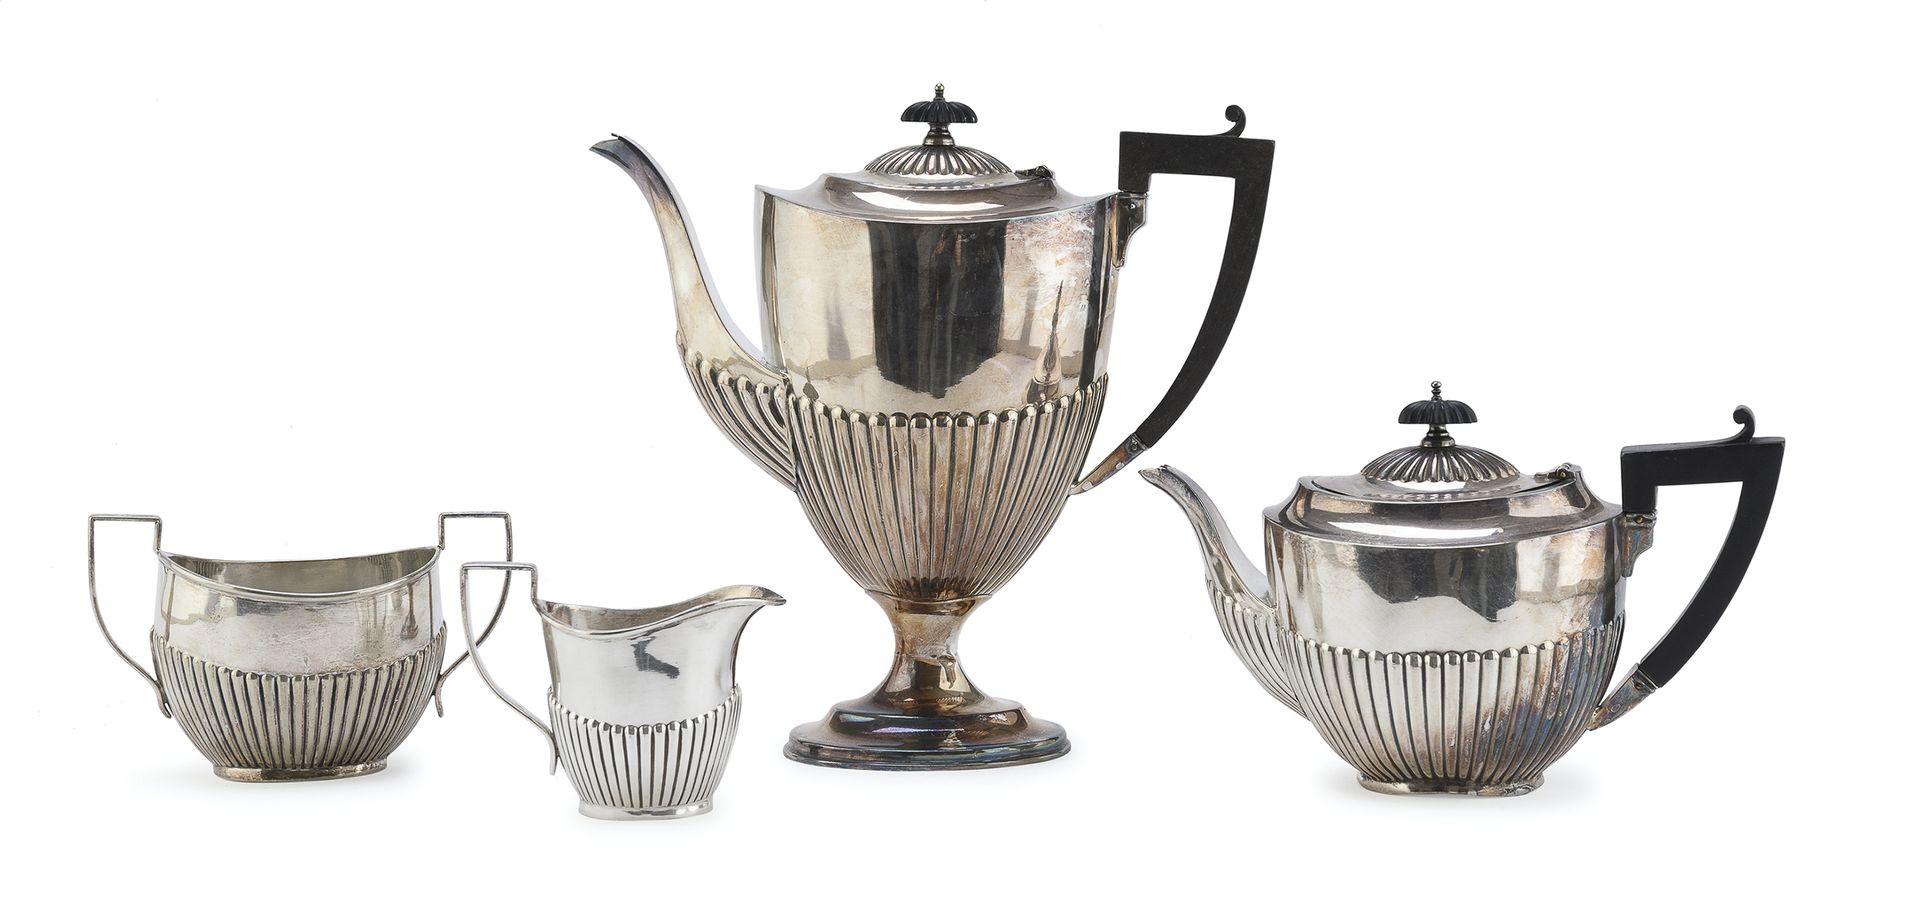 Null 镀银茶具，20世纪初，英国

有吊舱底部元素。由茶壶、茶水壶、牛奶壶和糖碗组成。

测量 茶壶，cm. 27 x 11 x 27.